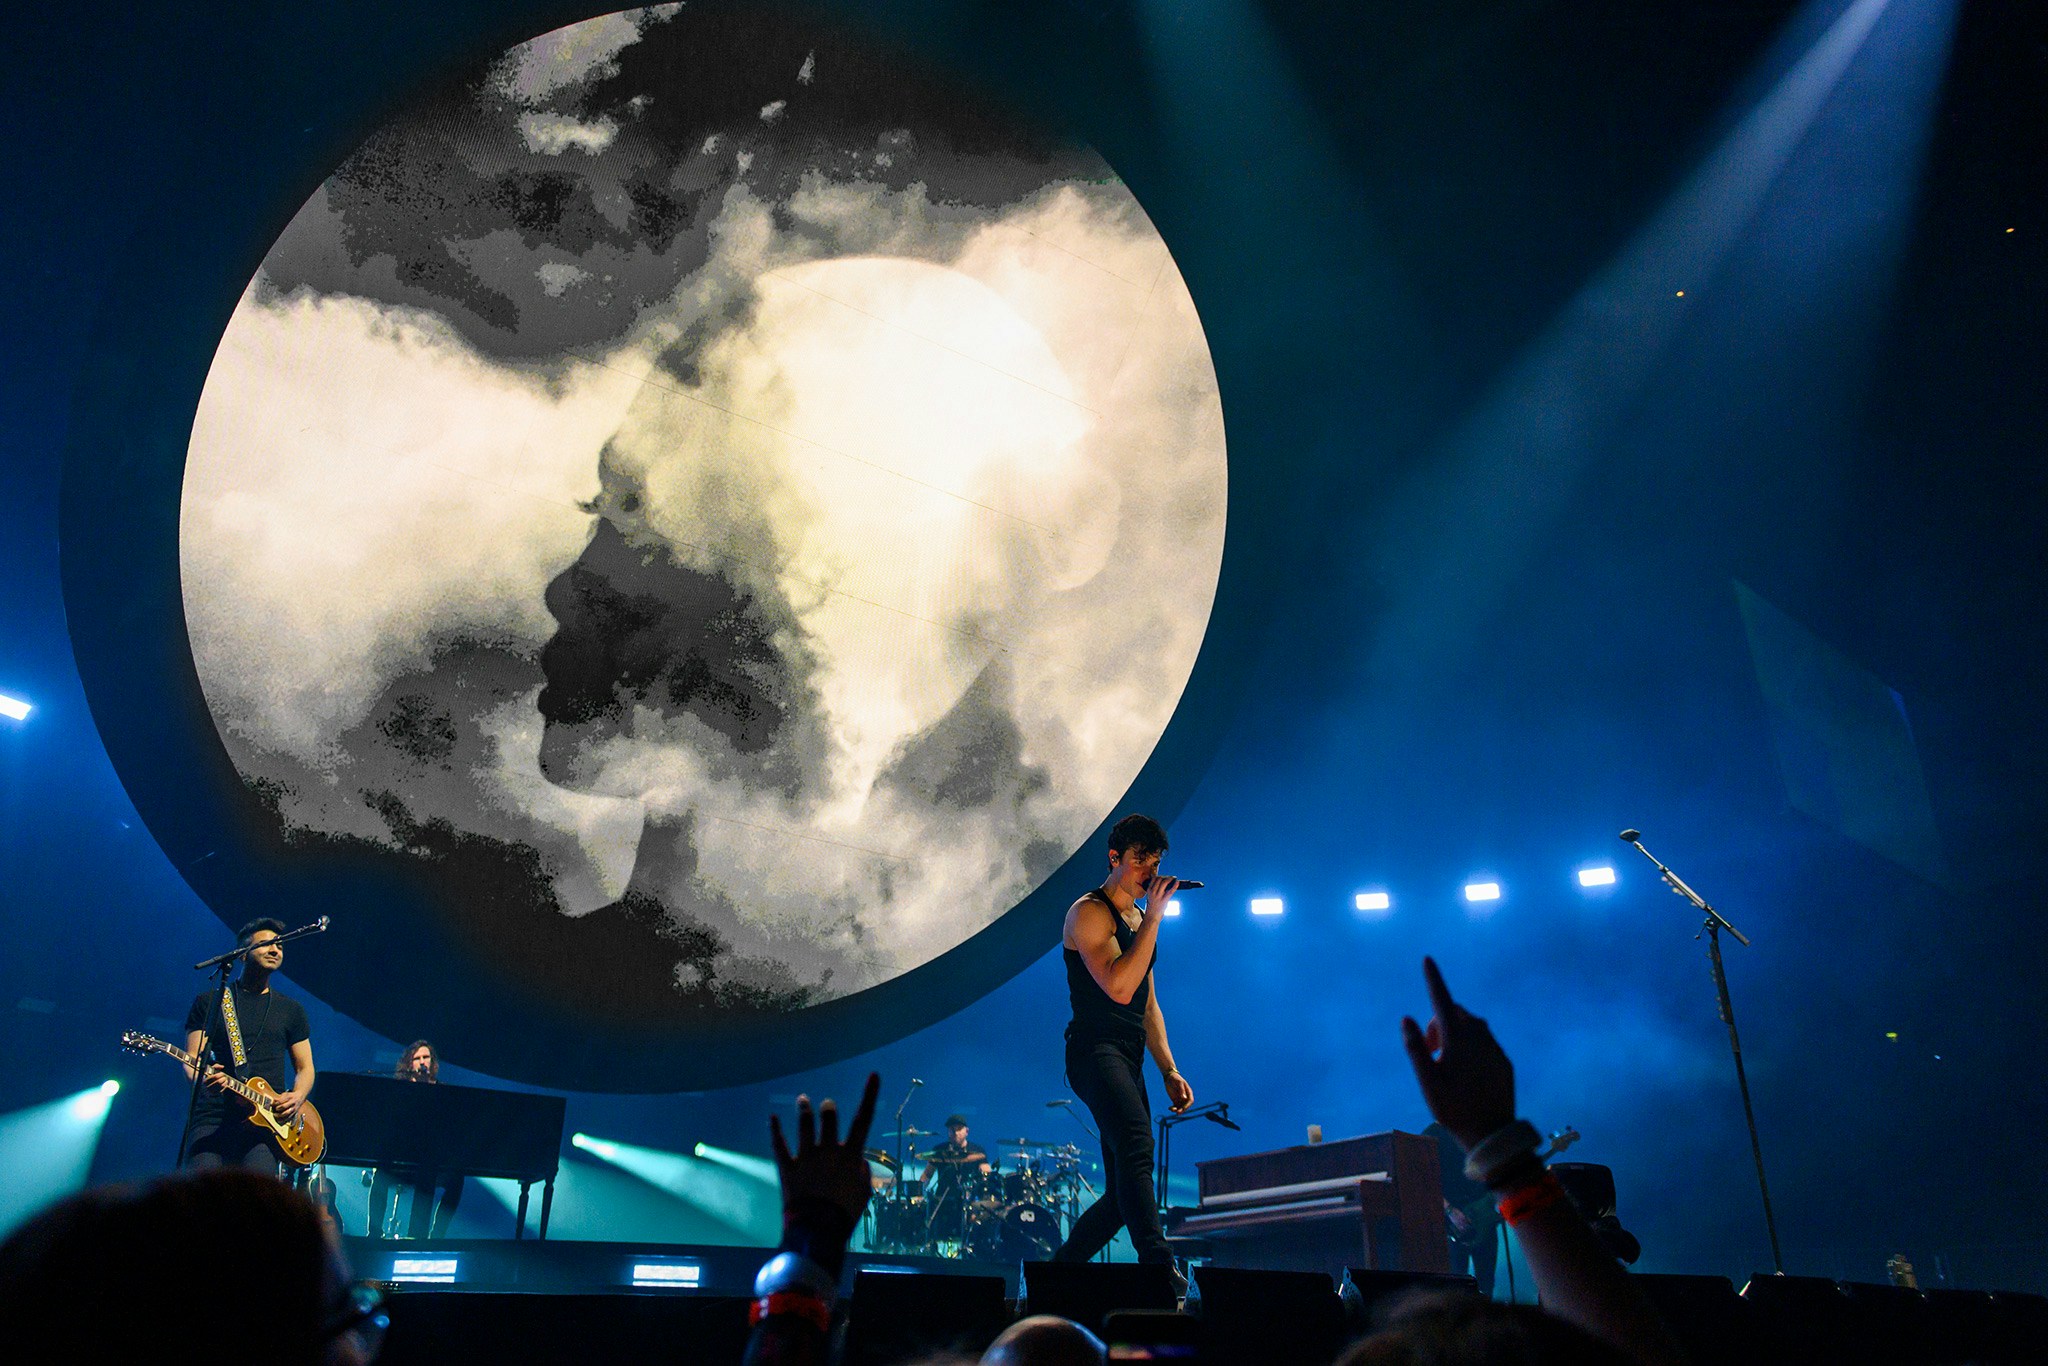 Shawn Mendes 2019 Tour stage smokey silhouette